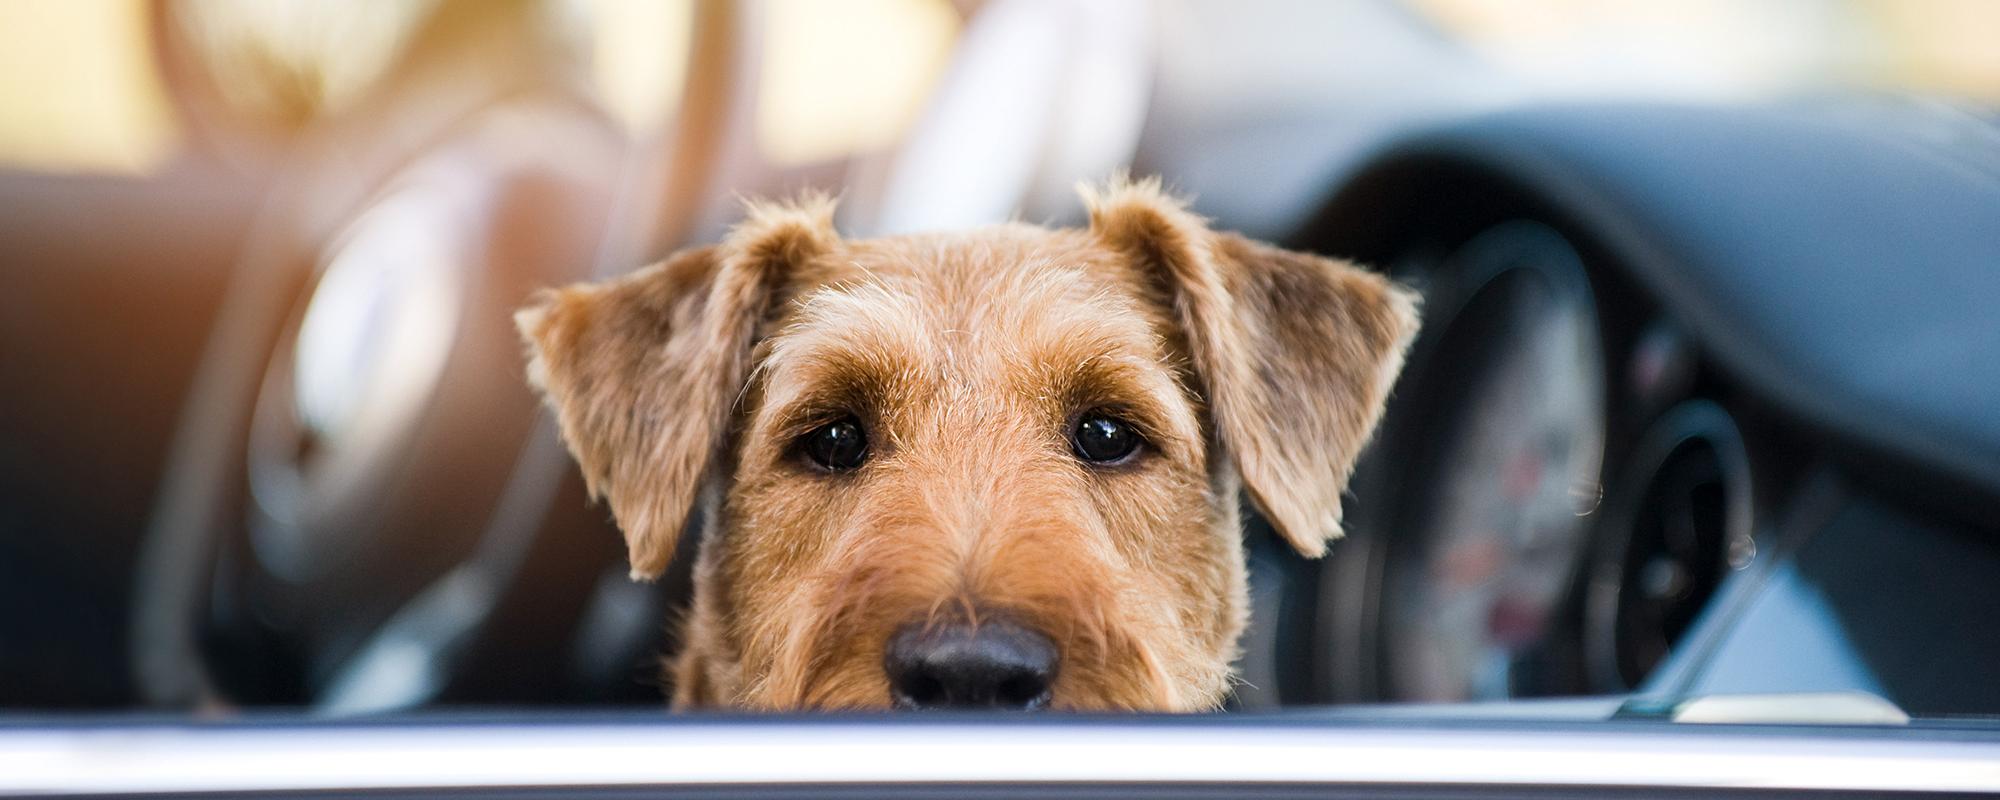 ein zurückgelassener Hund in einem an der Sonne geparkten Auto - eine Todesfalle